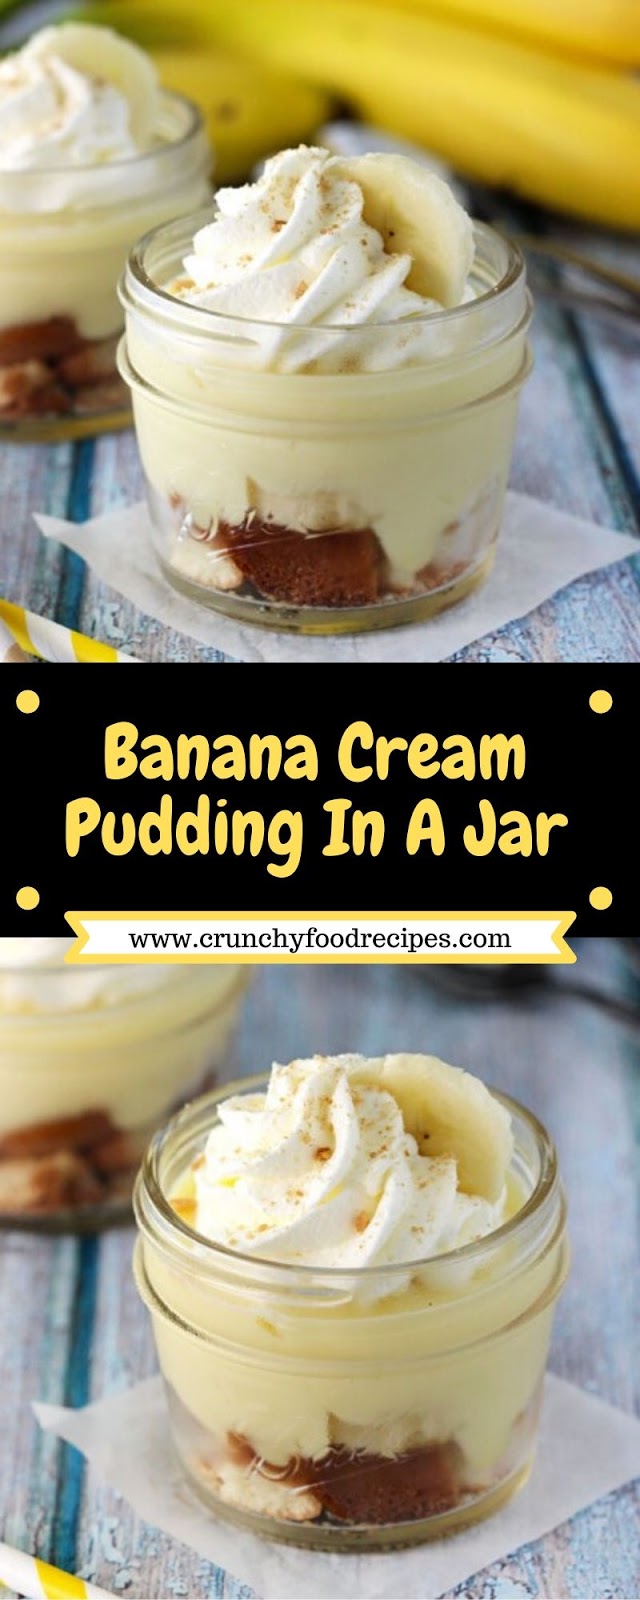 Banana Cream Pudding In A Jar